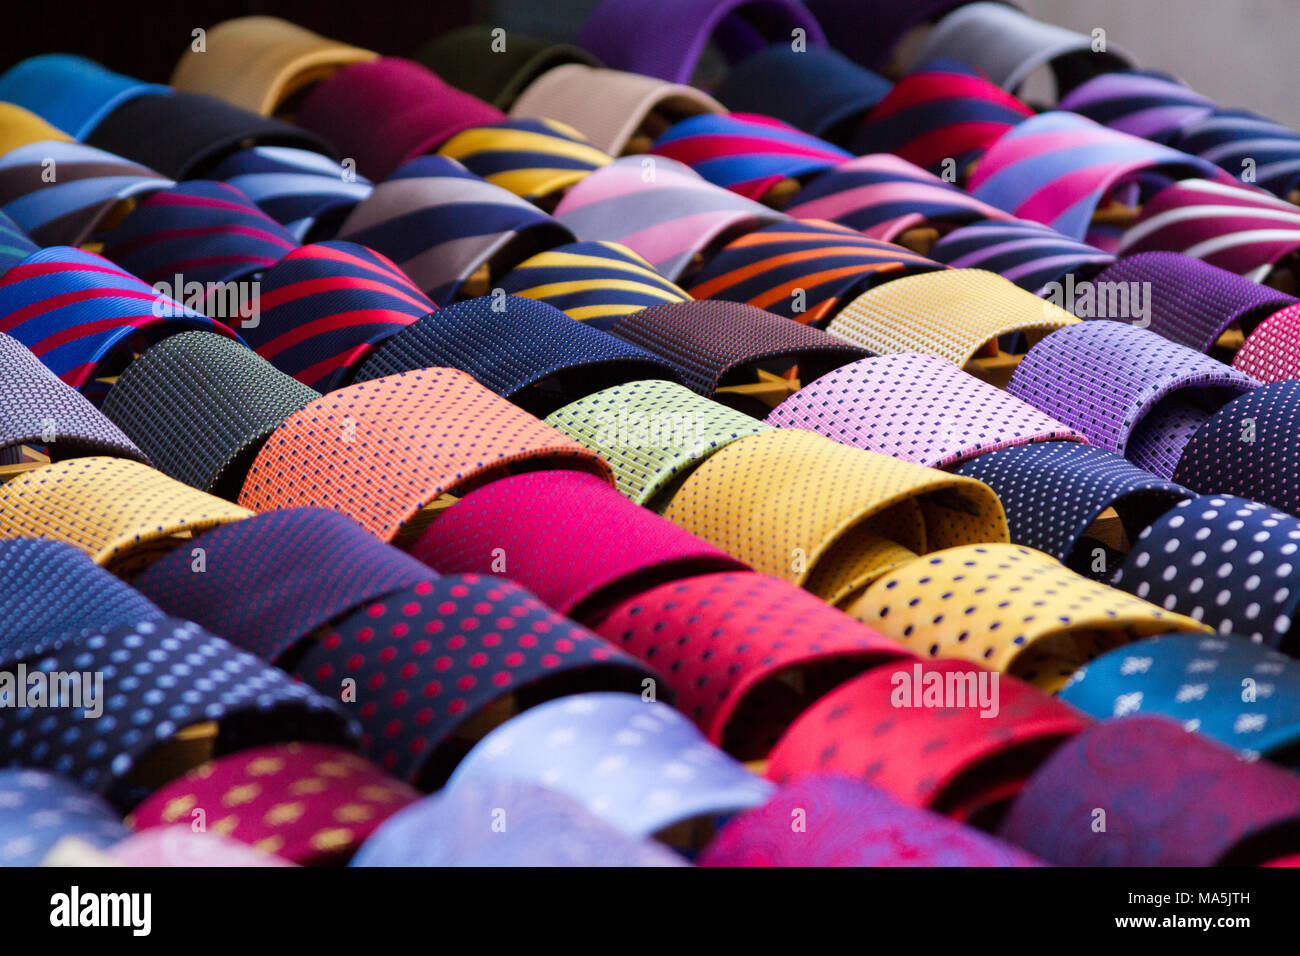 Cravates colorées affichées dans un magasin Banque D'Images